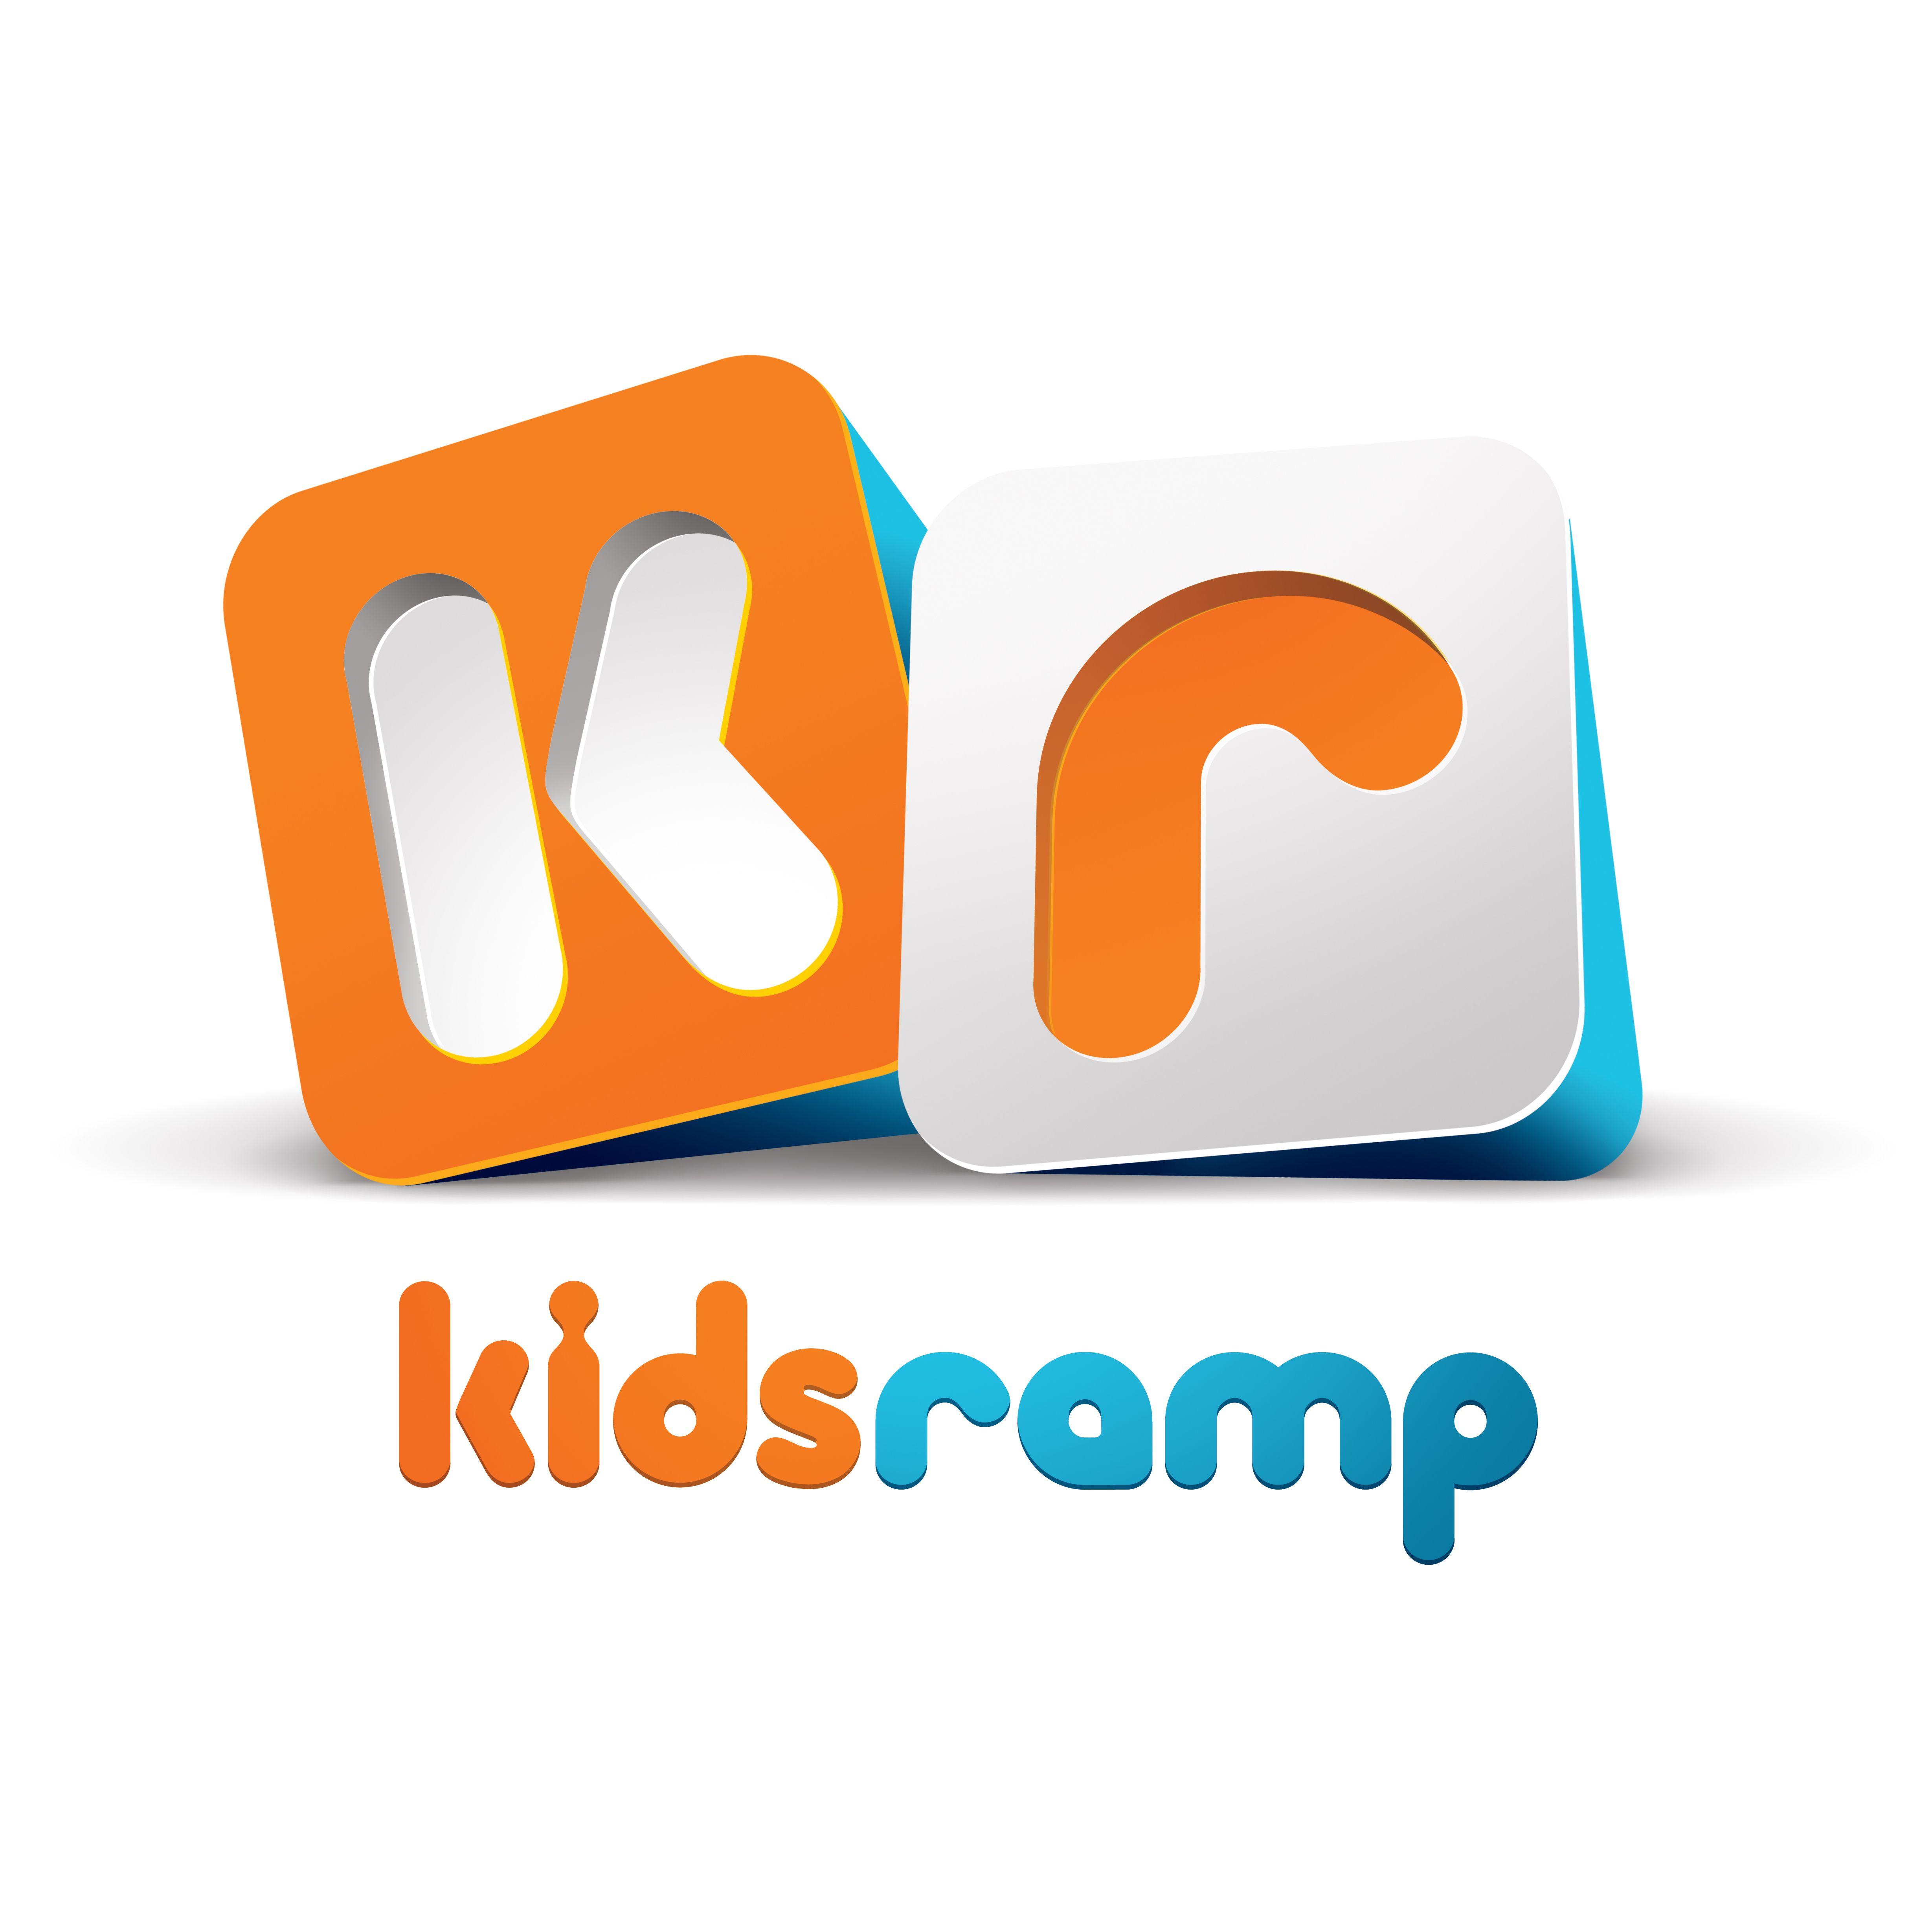 Kr Logo - Kids Ramp Logo concept. Brad Wallace Imaging